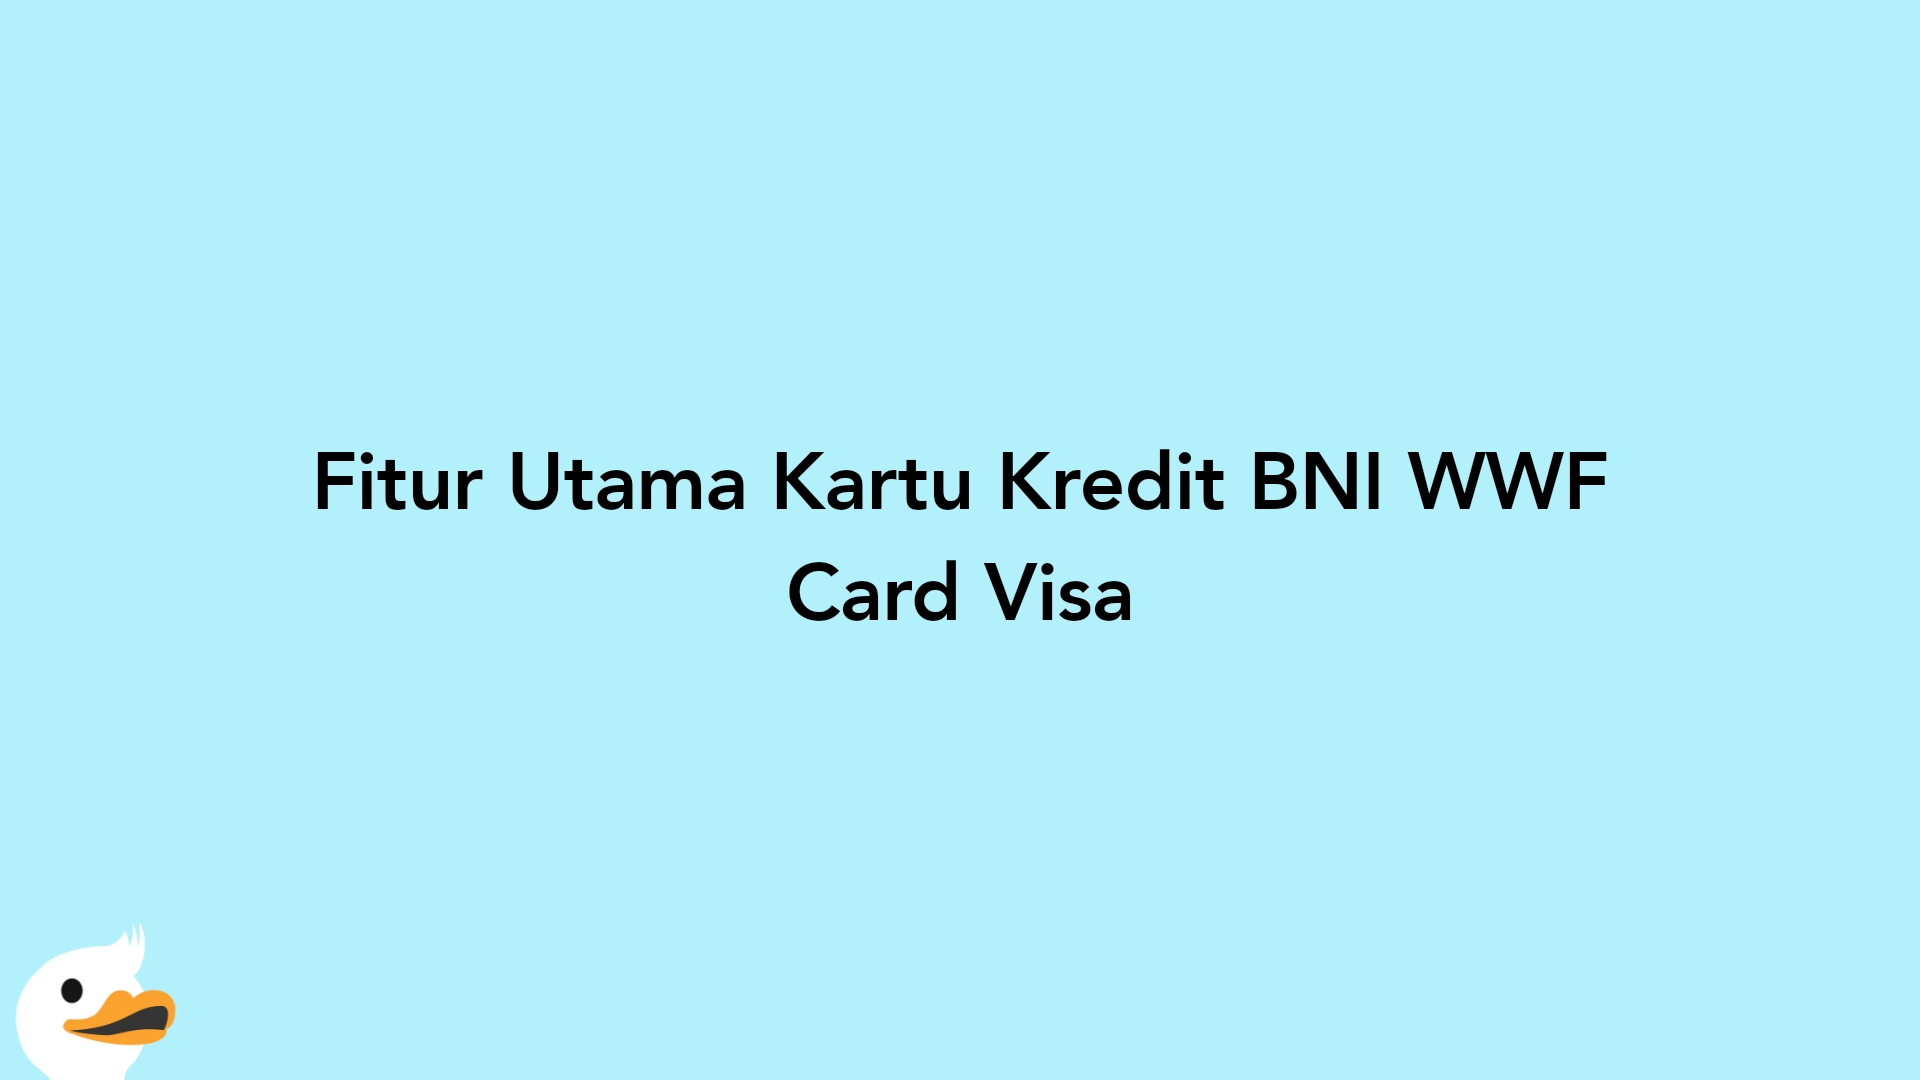 Fitur Utama Kartu Kredit BNI WWF Card Visa